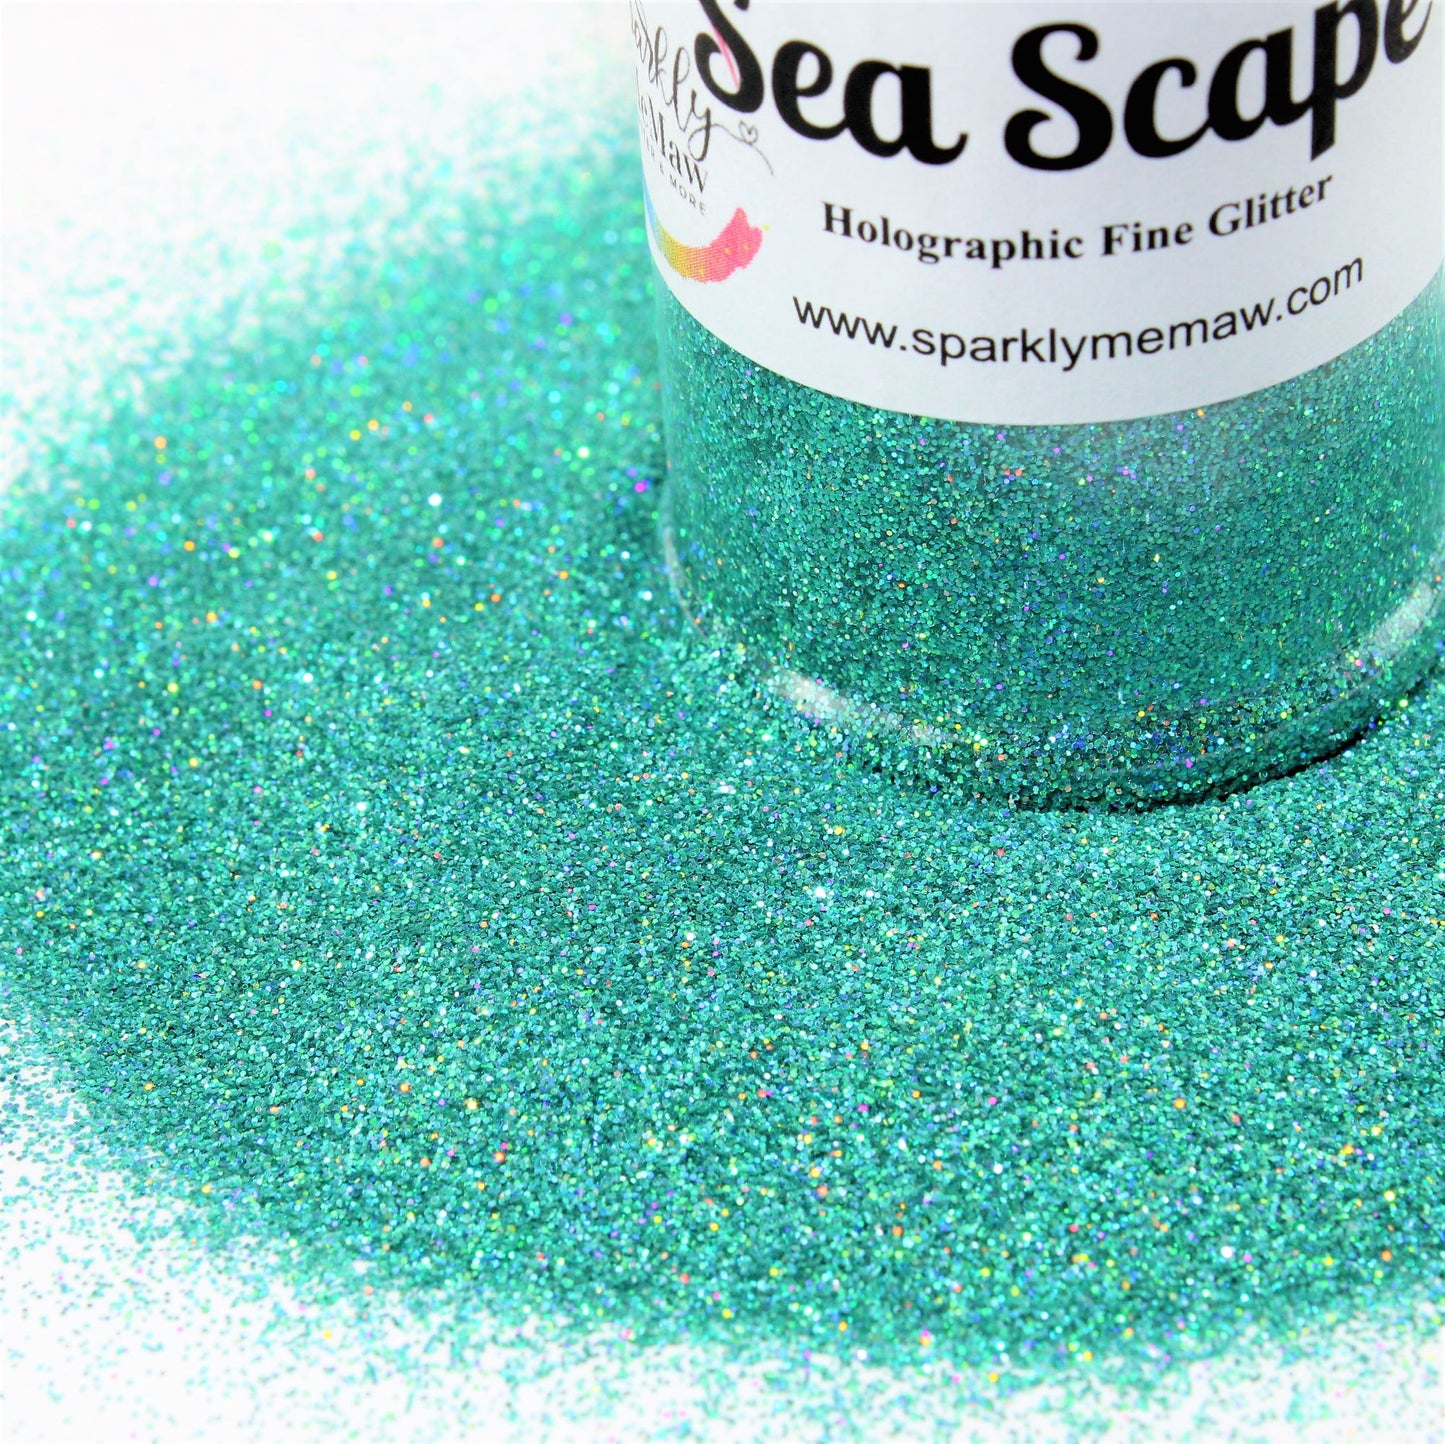 Sea-Scape  Holographic Fine Glitter